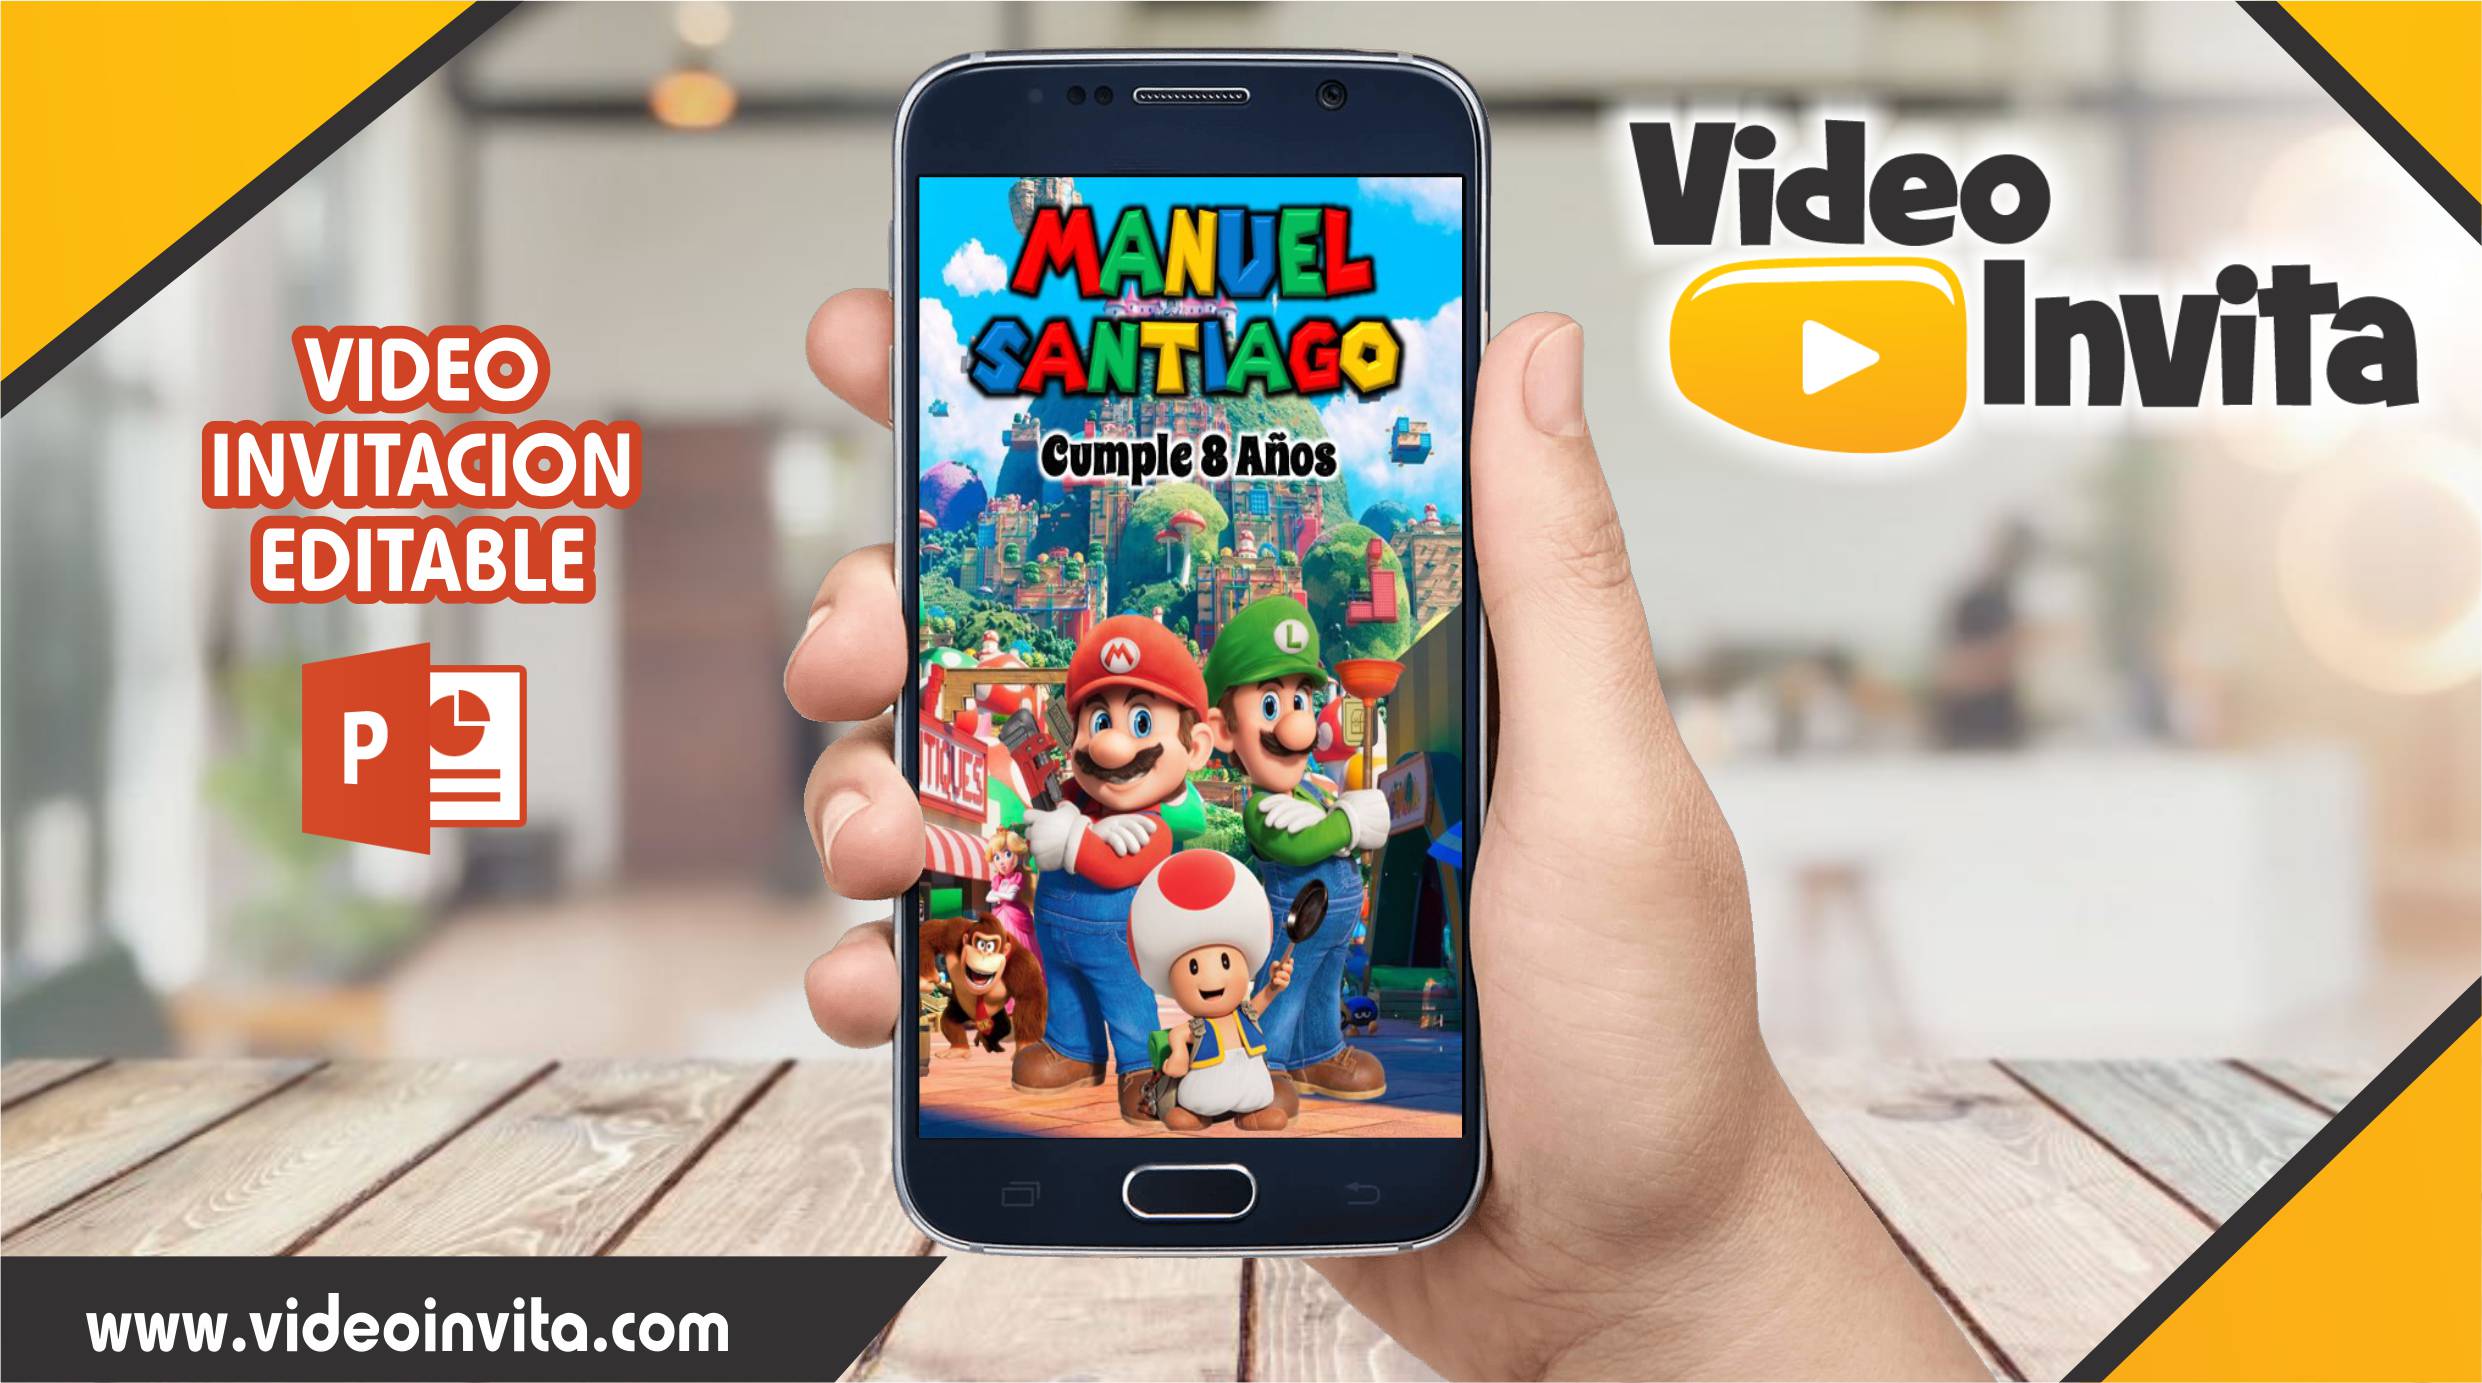 Video invitacion editable de Super Mario Bros La Pelicula